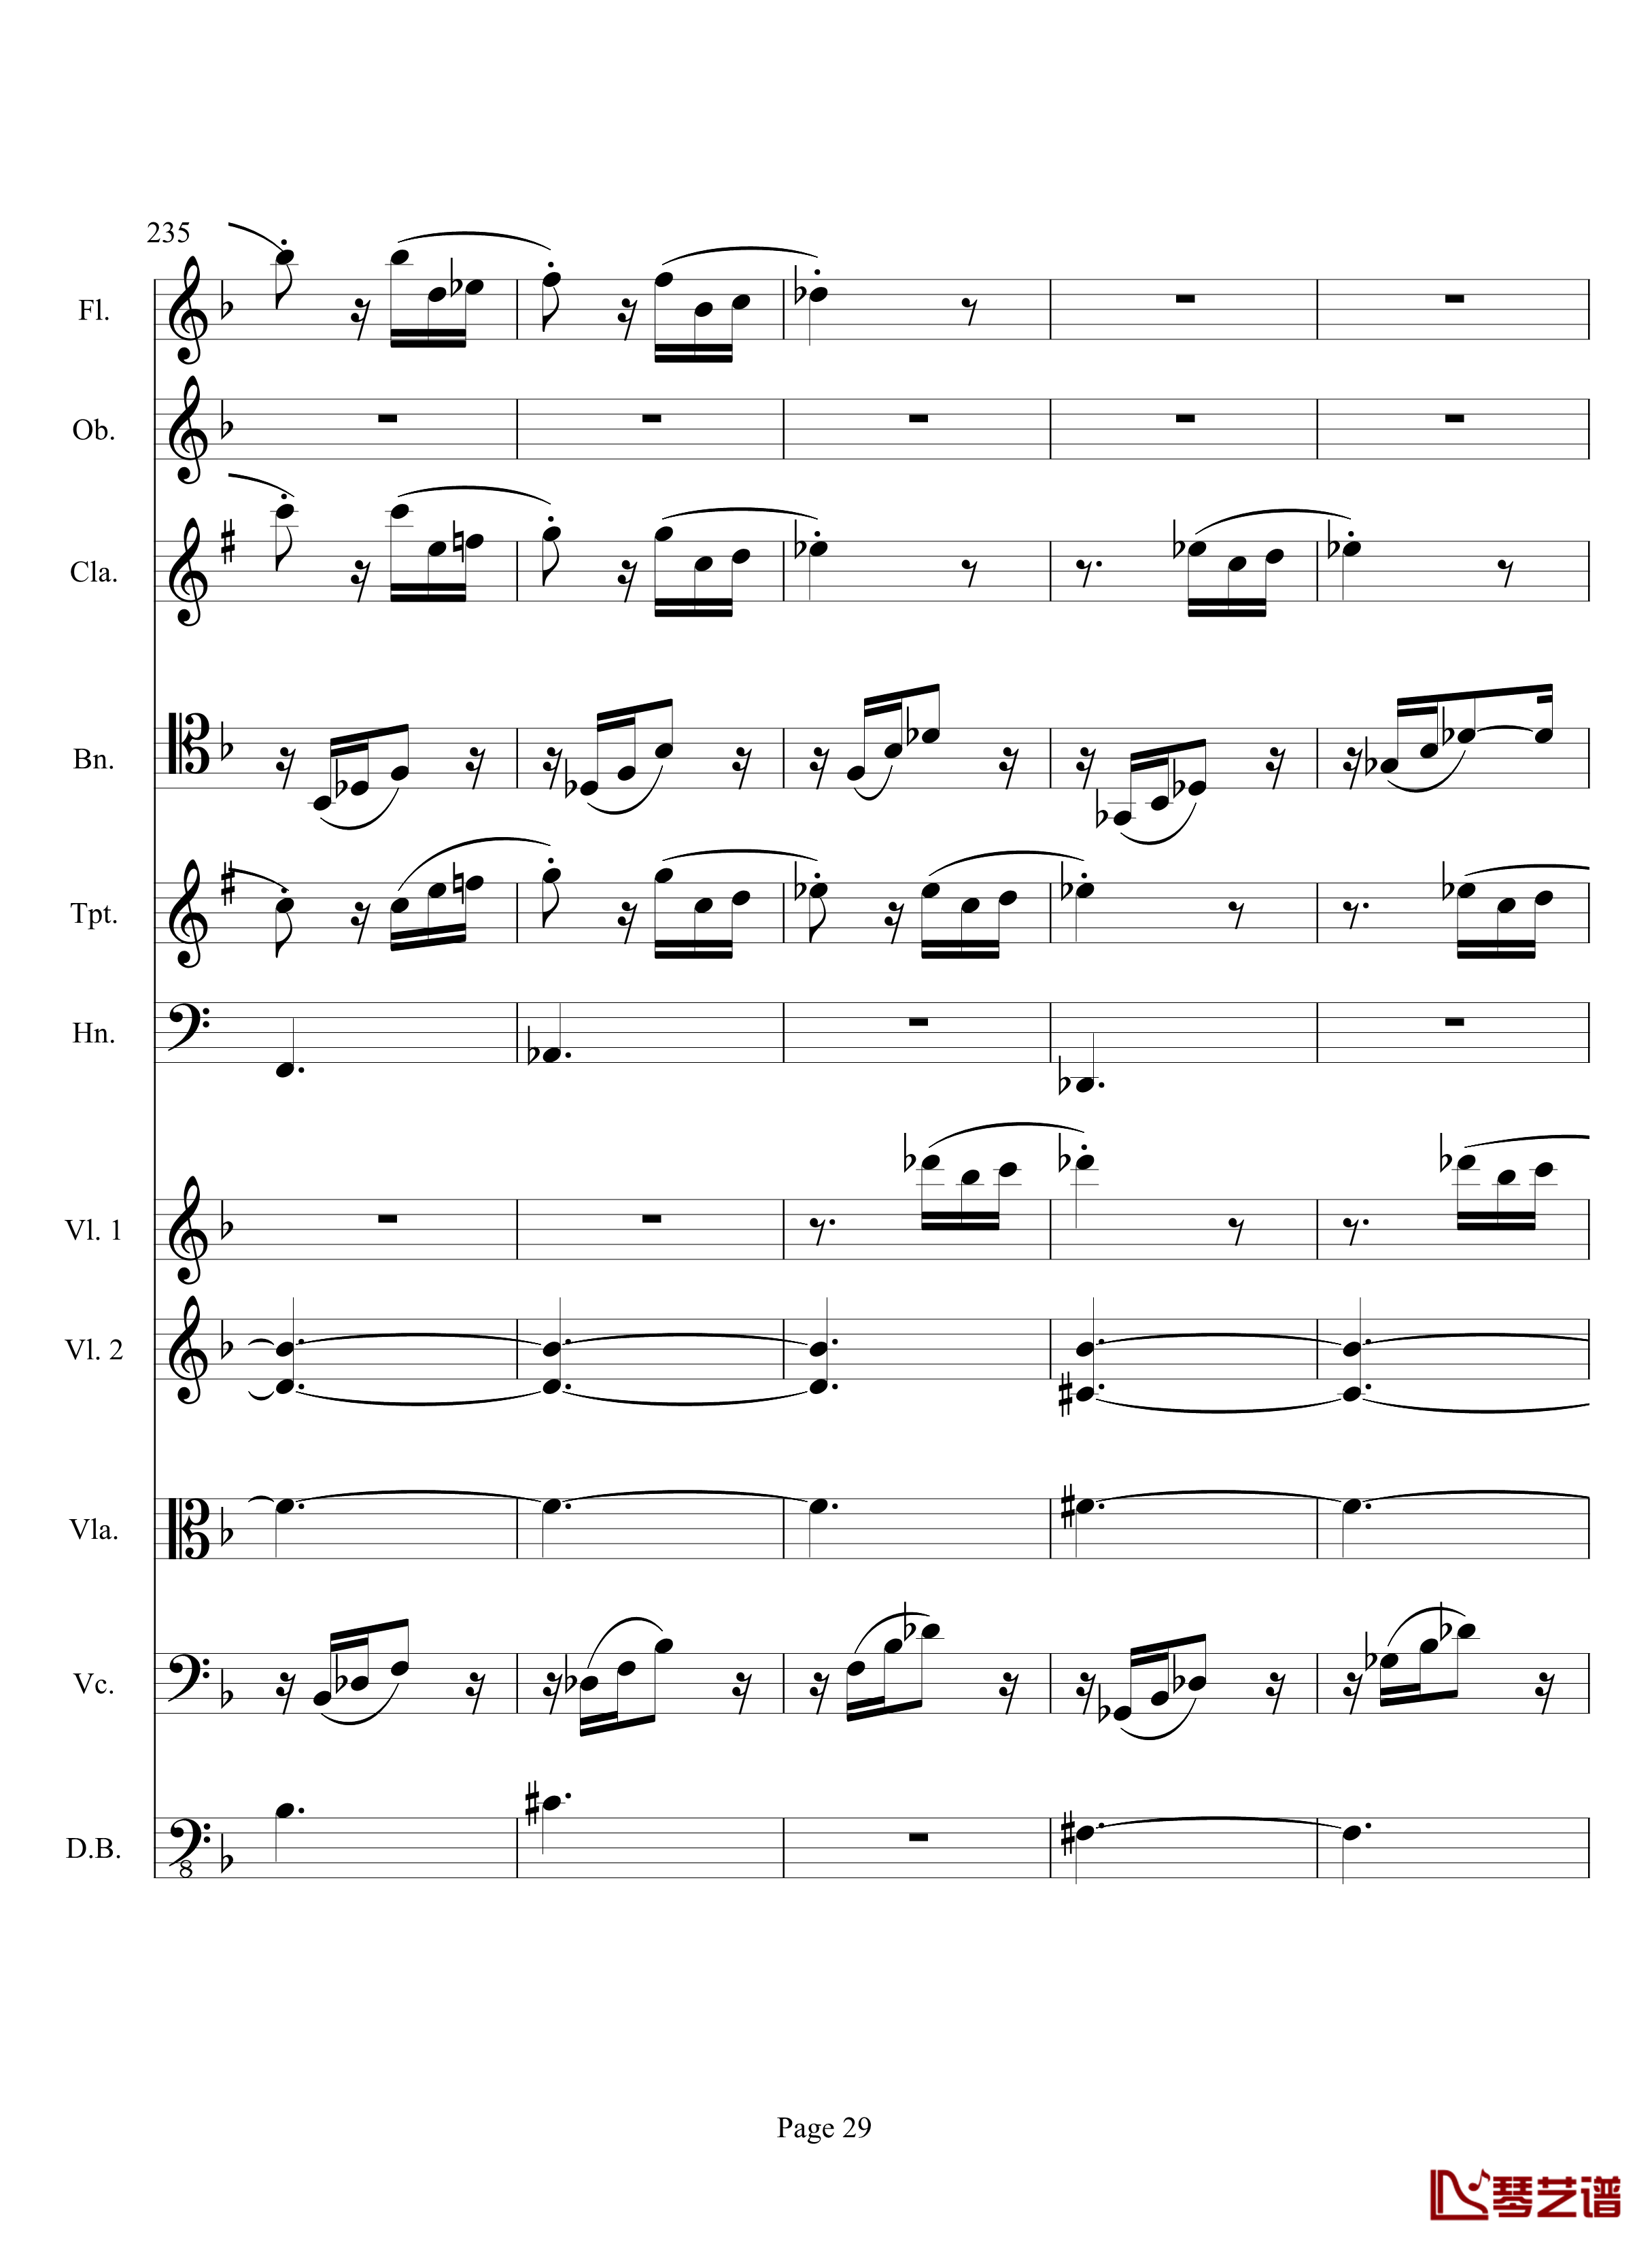 奏鸣曲之交响钢琴谱-第17首-Ⅲ-贝多芬-beethoven29